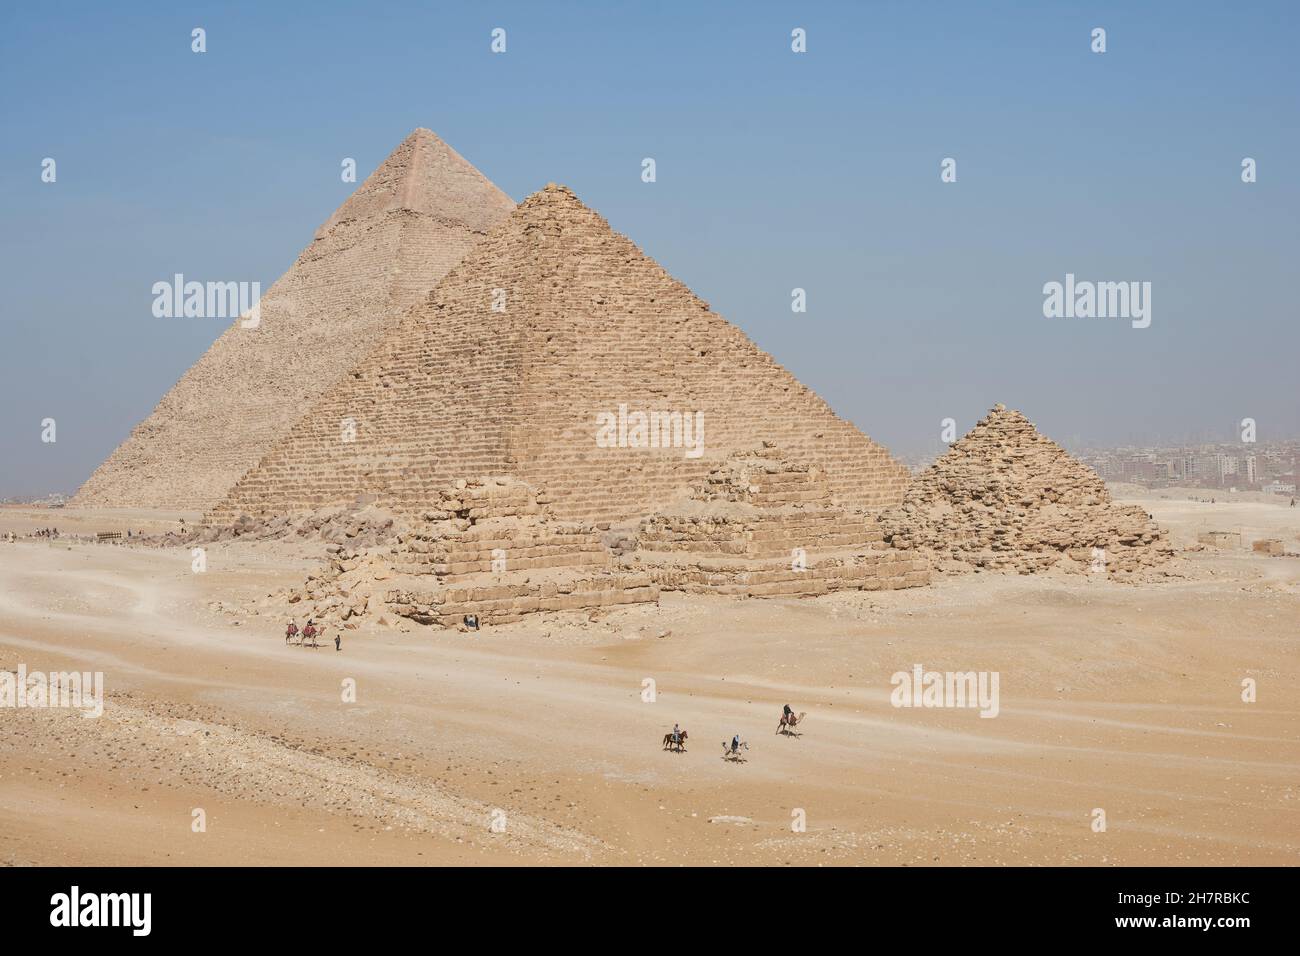 Vista de Khafre, Menkaure y pirámides de Queens desde el desierto. Varios jinetes de caballos y camellos en el marco. Foto de stock